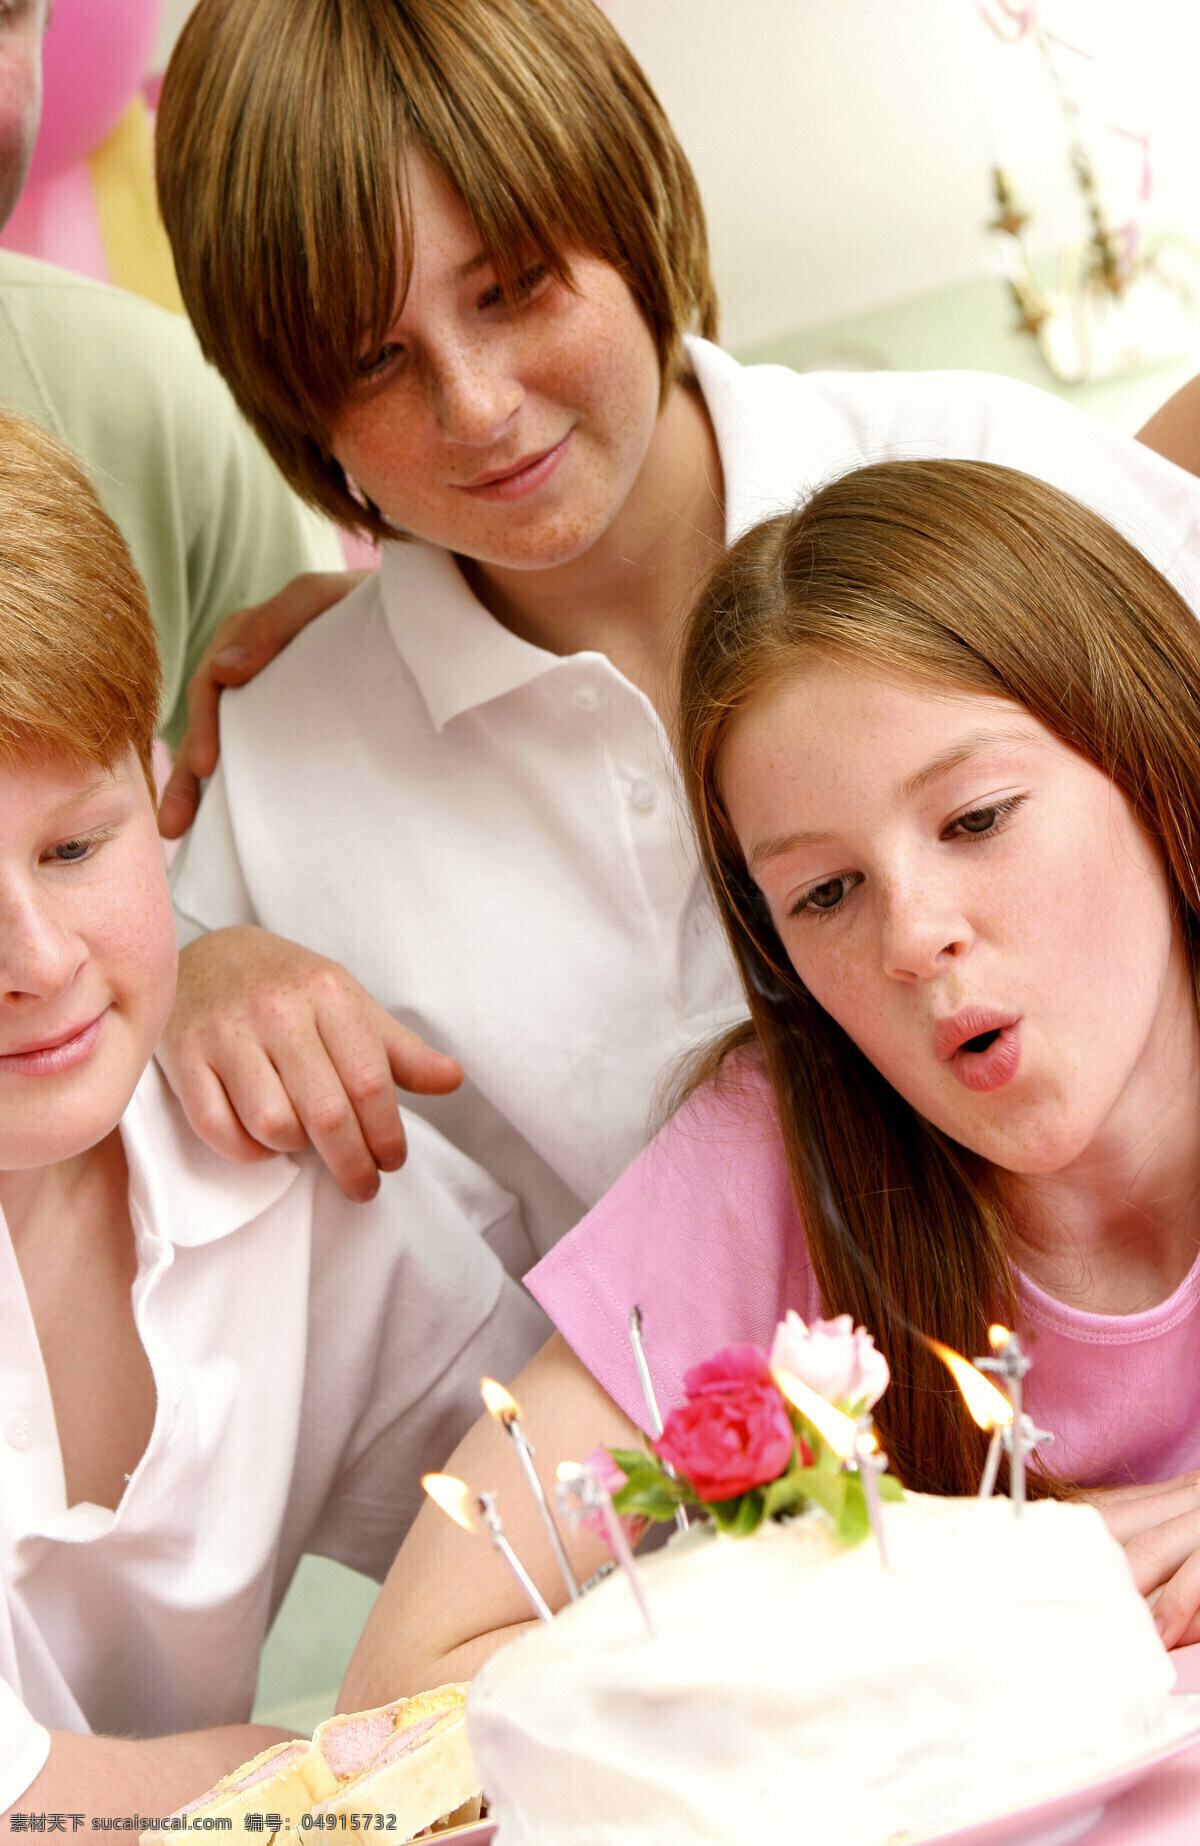 家庭 生日 聚会 人物 生日聚会 开心 一家人 幸福 亲情 礼物 蛋糕 吹蜡烛 生日图片 生活百科